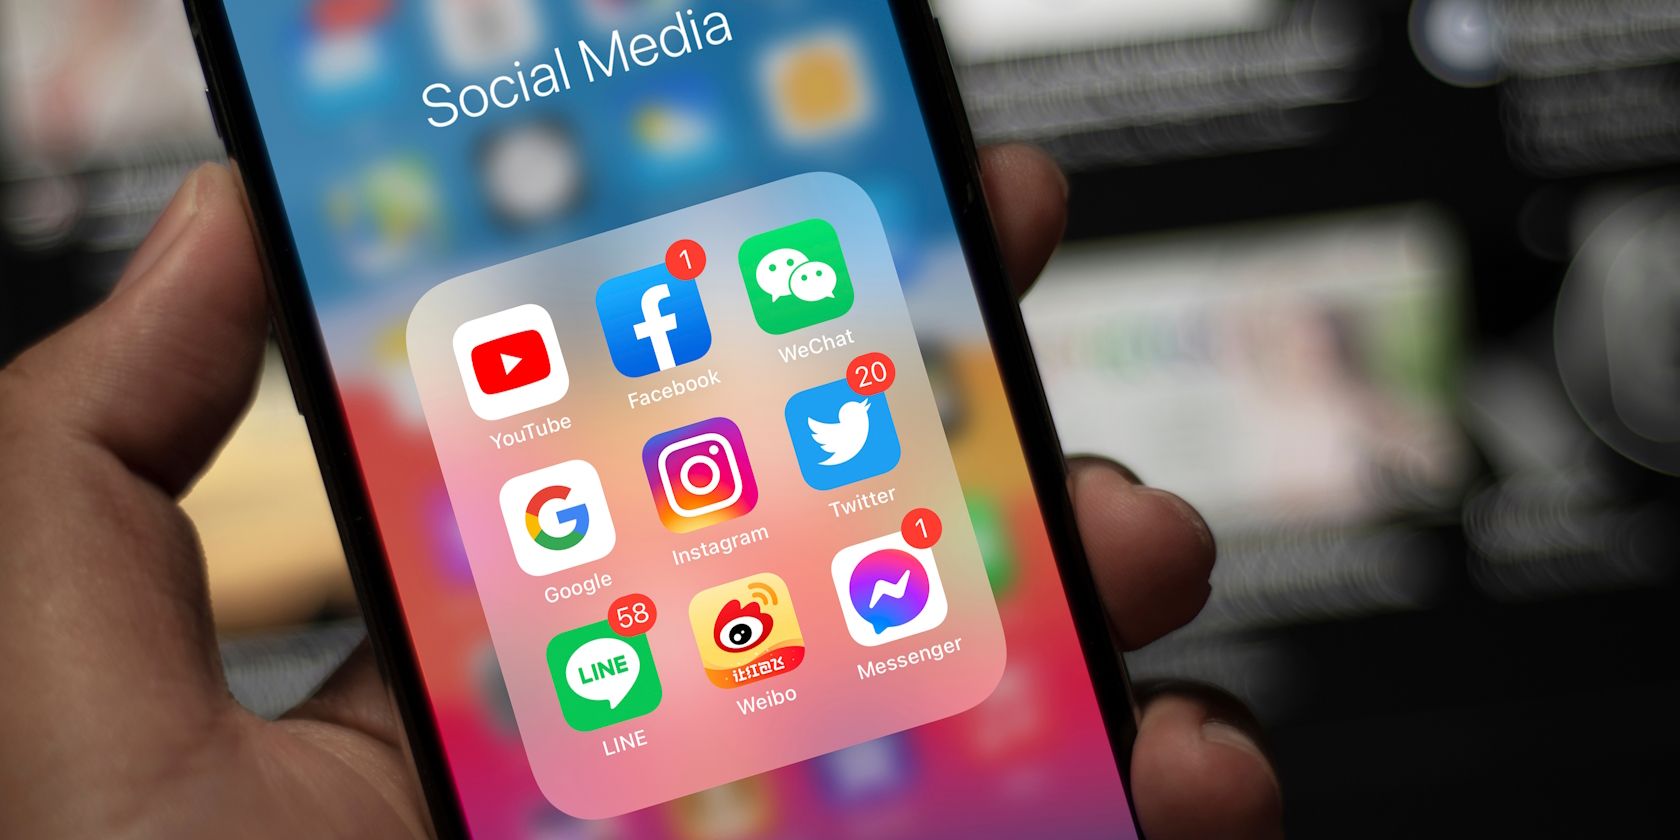 Social Media apps folder on an iPhone